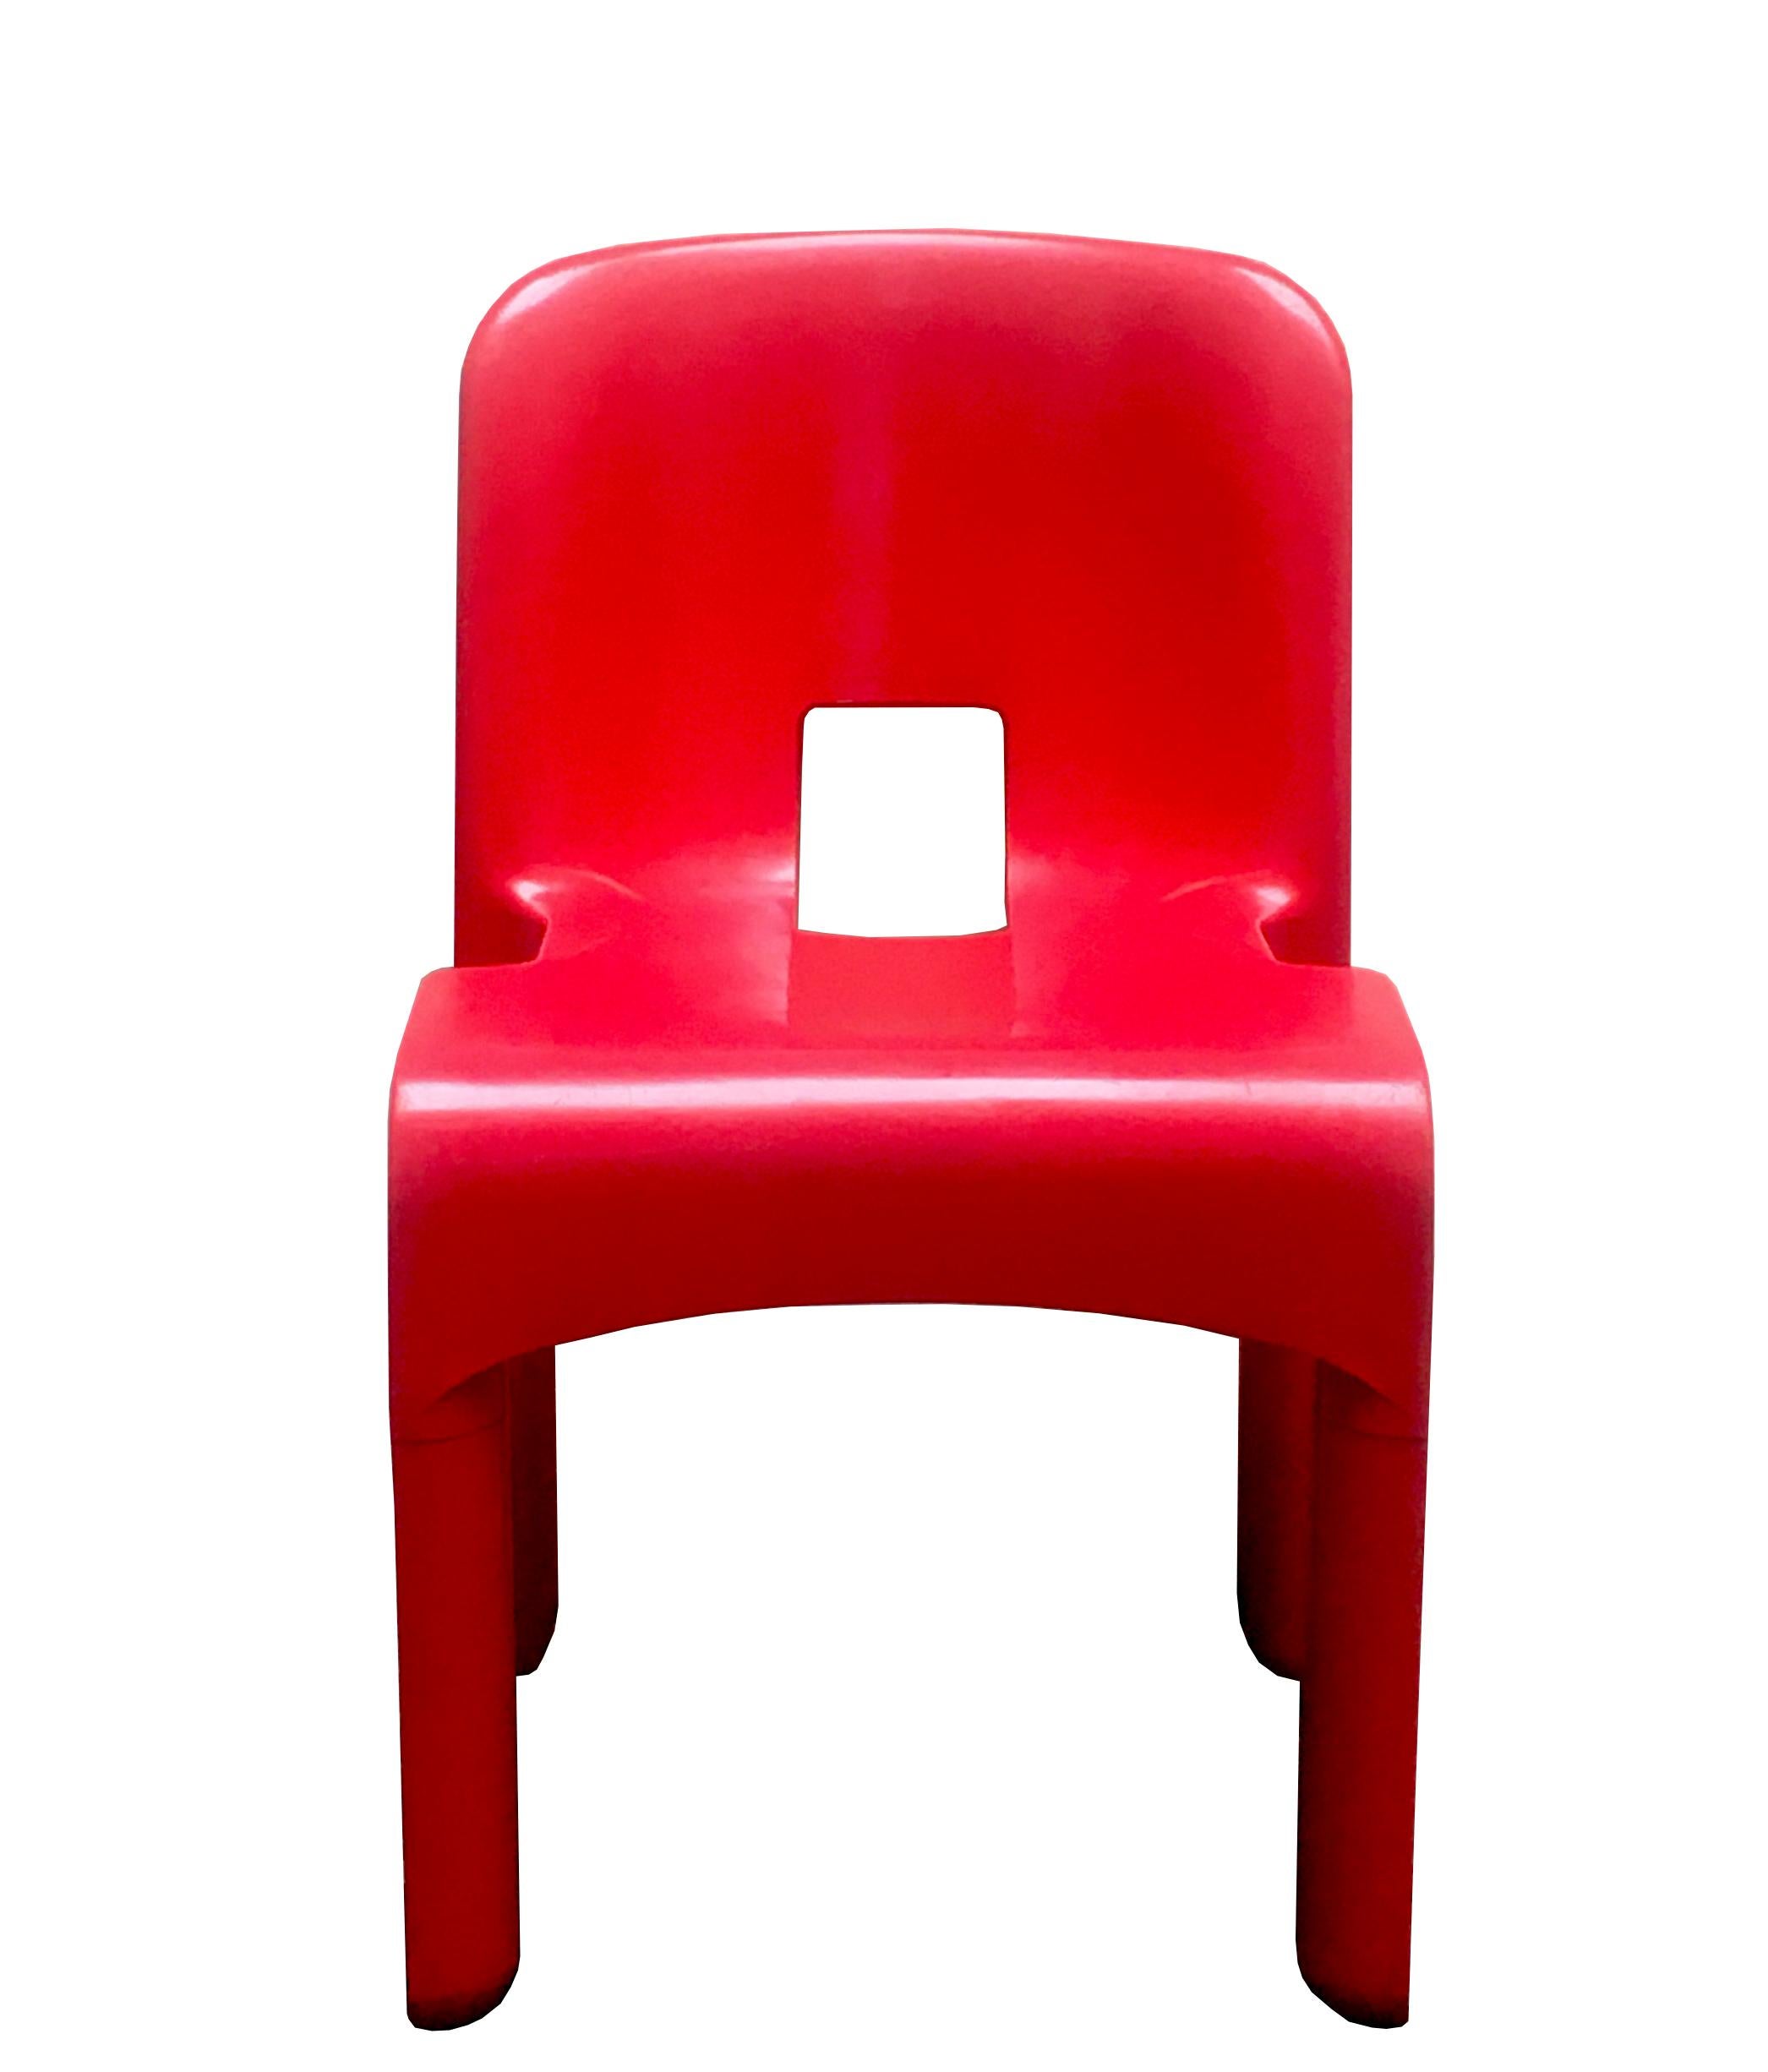 Joe Colombo model 4867 Universale stacking chair. Designer: Joe Colombo Manufacturer: Kartell
Model: 4867 Universale stacking chair
Material: Plastic / rubber
Period: 1967.